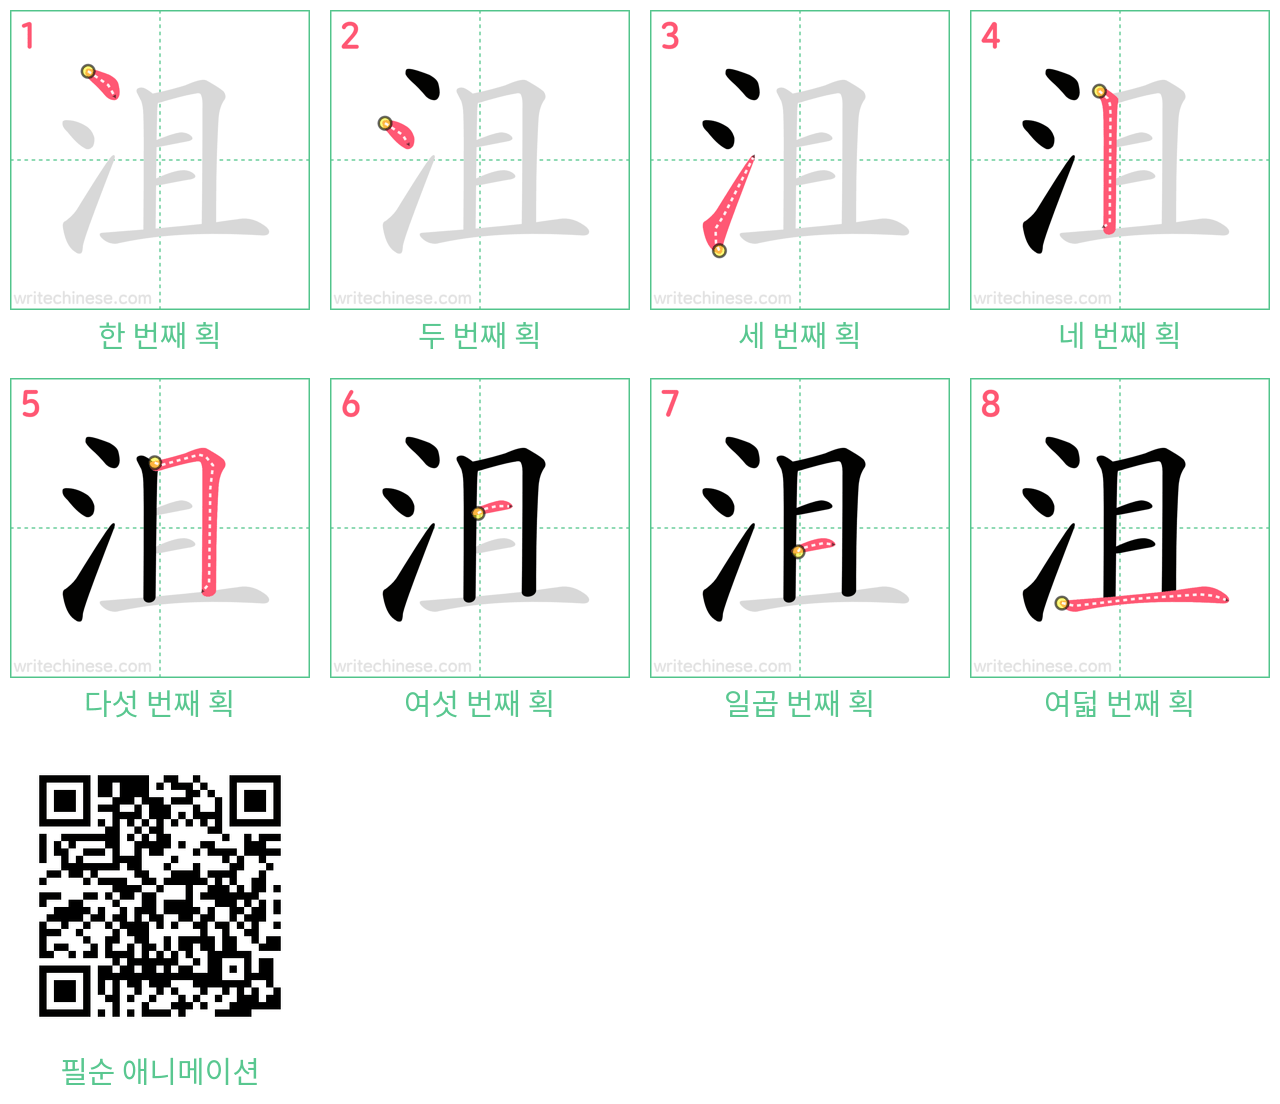 沮 step-by-step stroke order diagrams